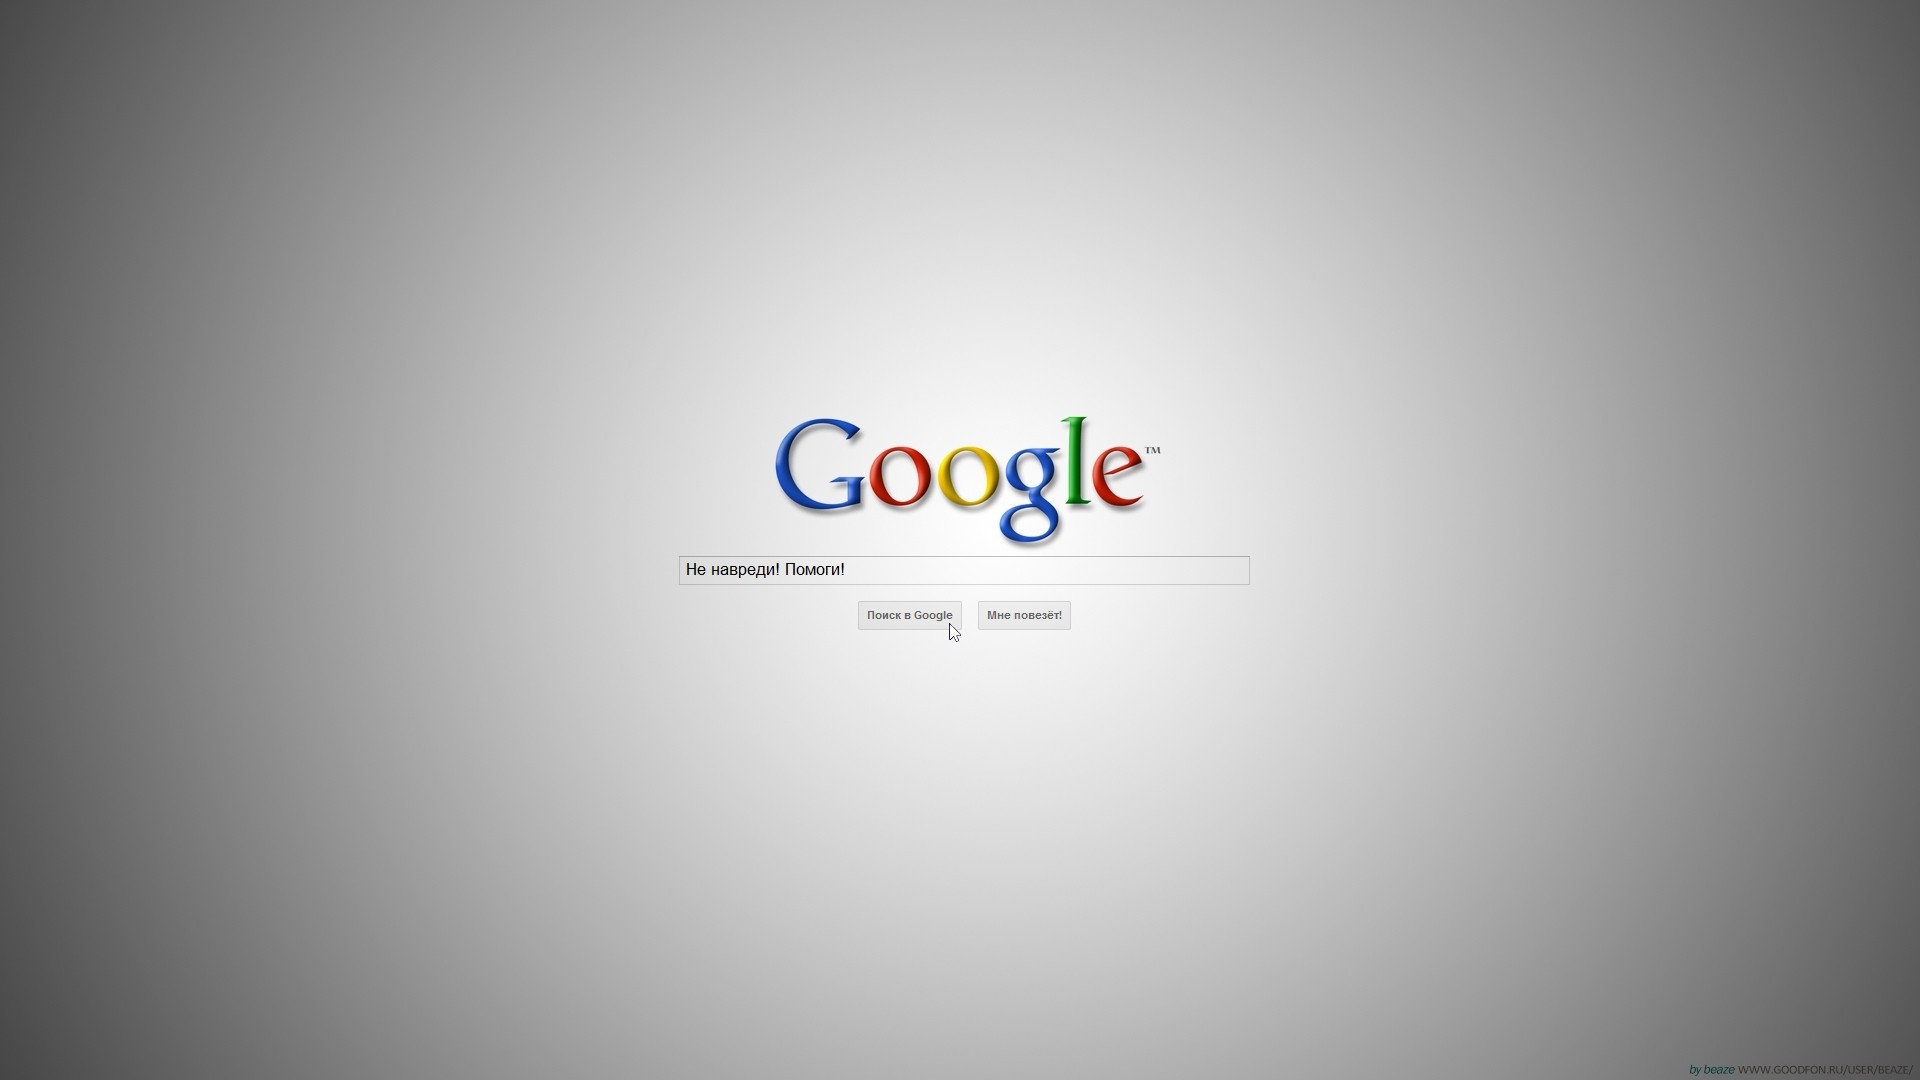 google full hd wallpaper,testo,font,immagine dello schermo,sistema operativo,design